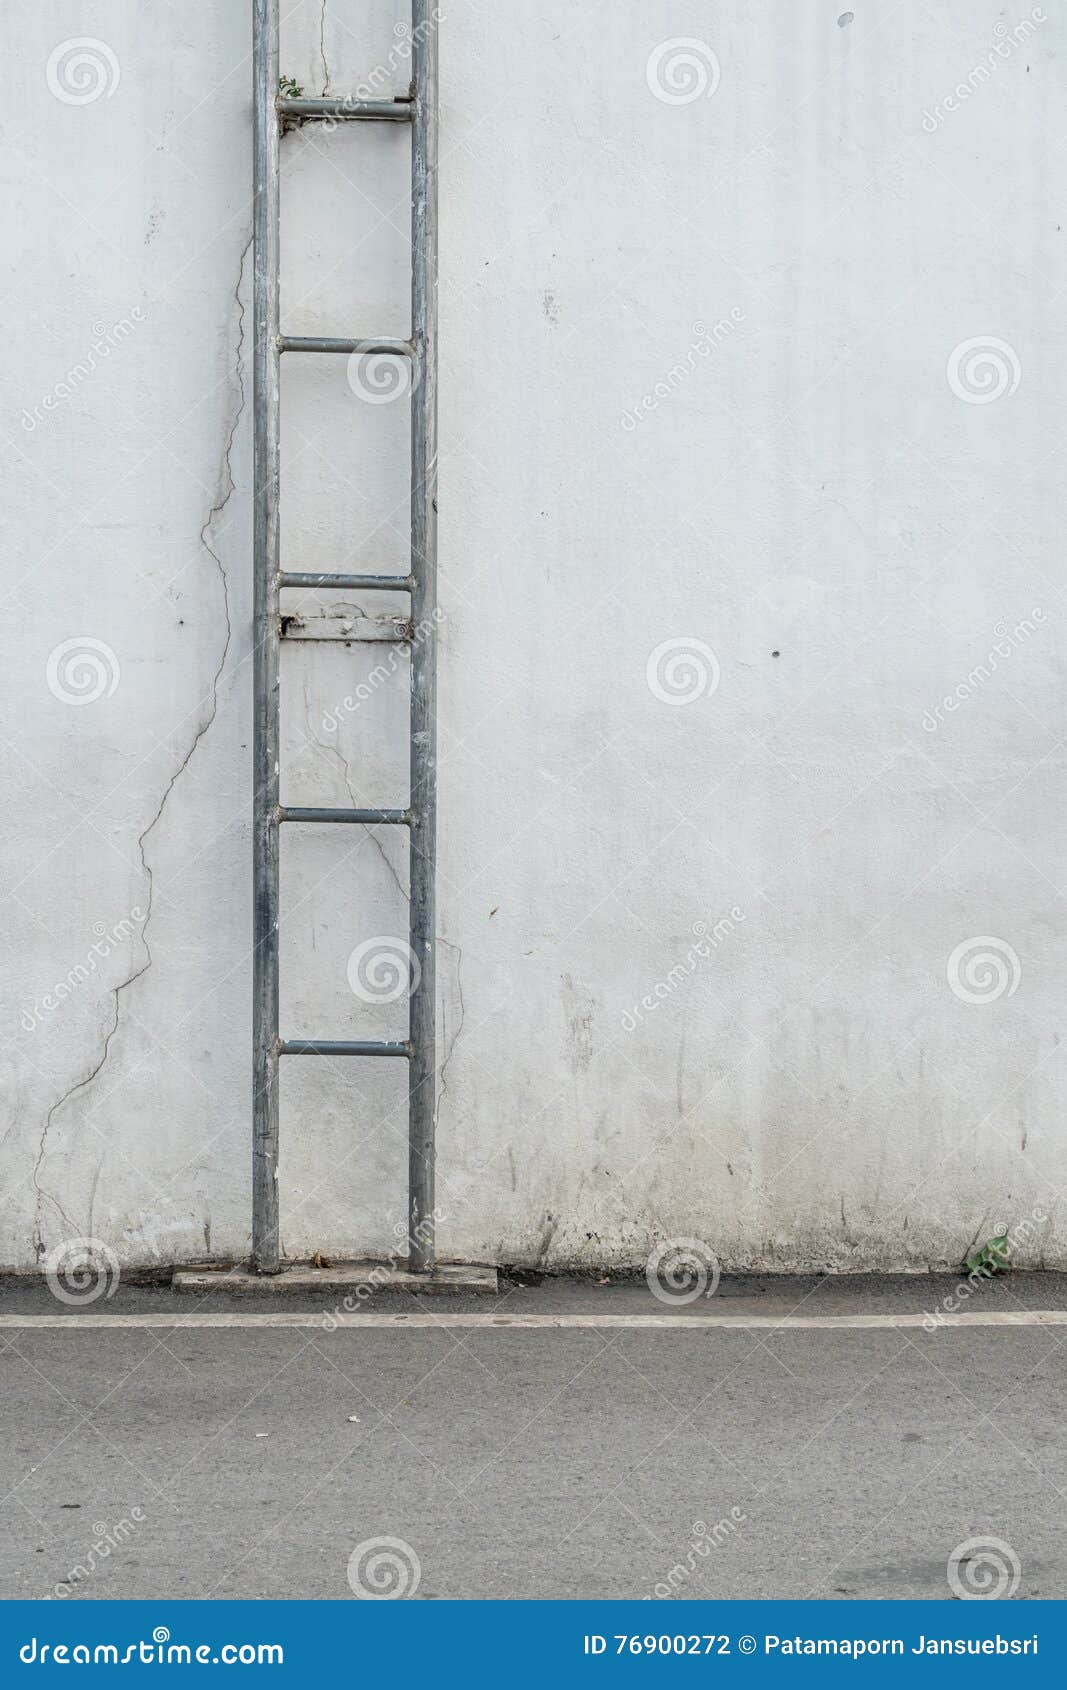 Vaste Ladder stock Image of verbetering, verticaal - 76900272